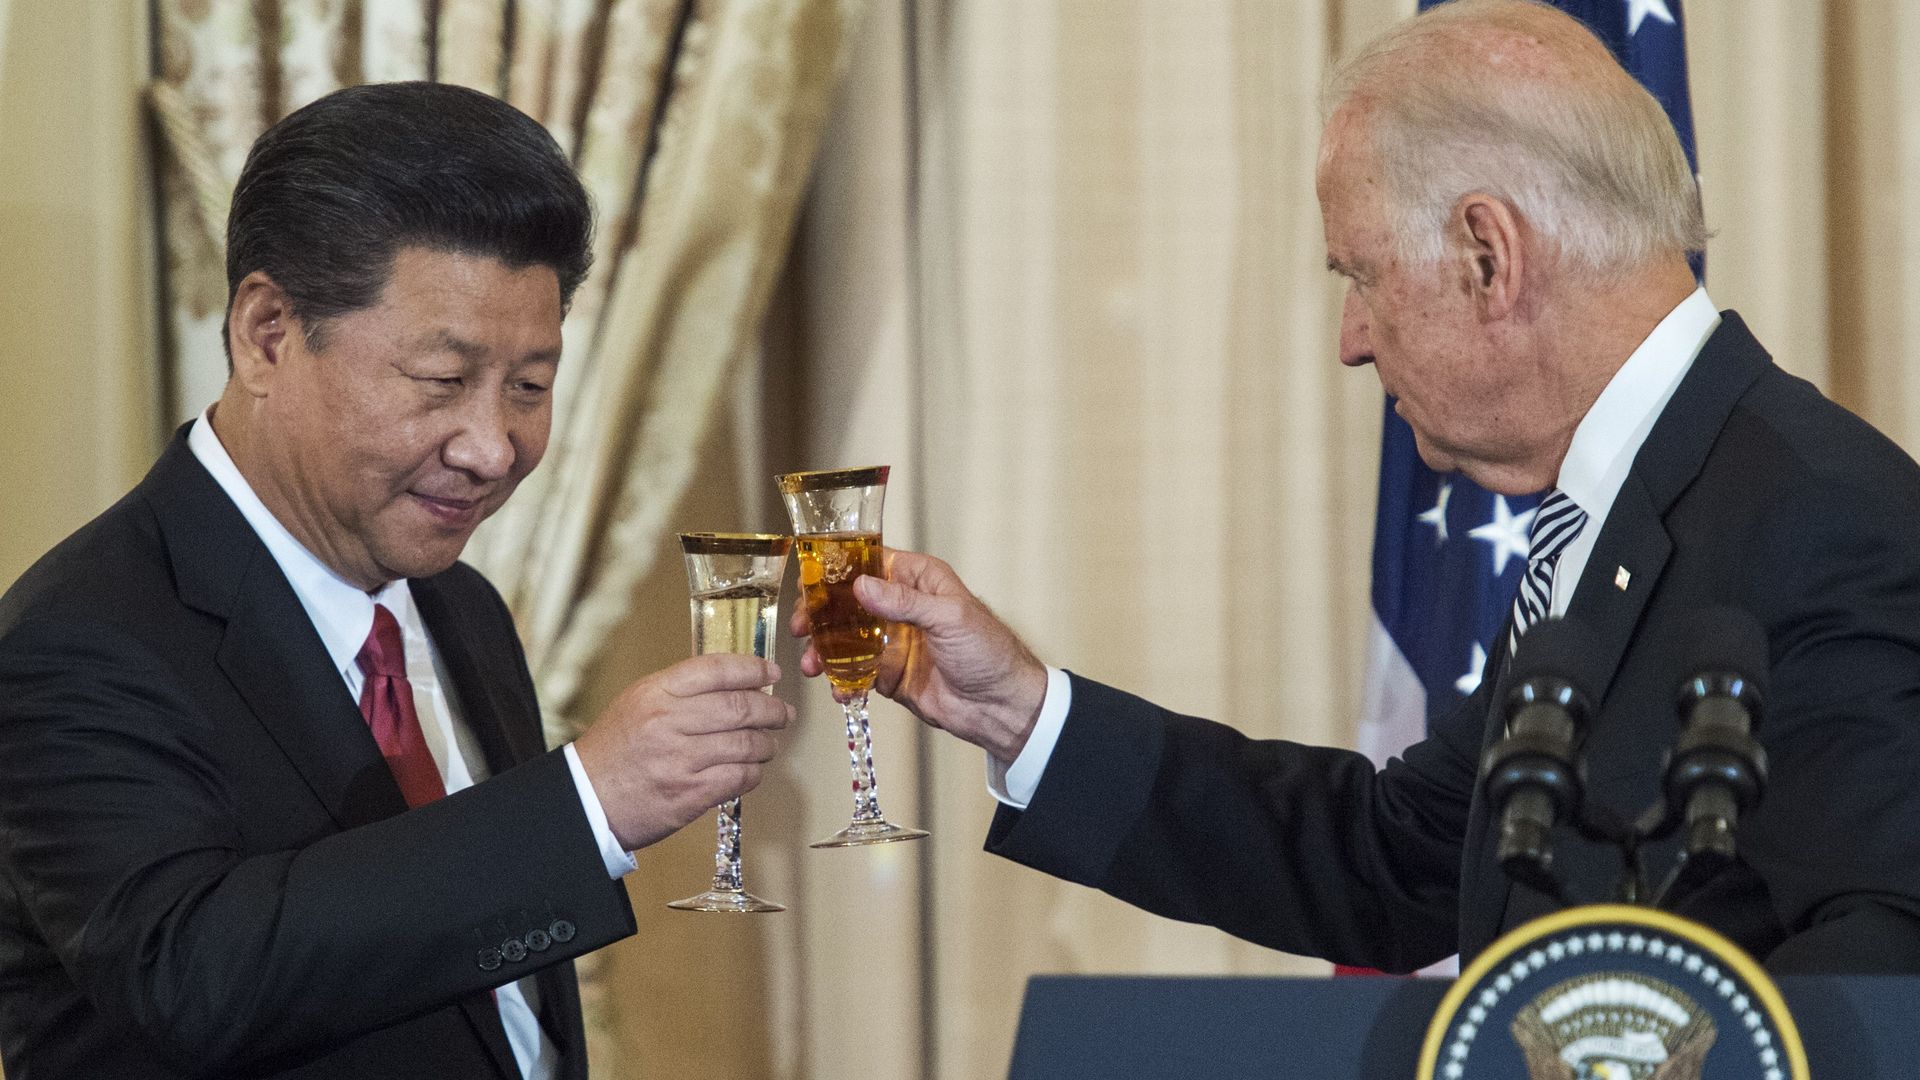 China congratulates Biden on election victory - Axios